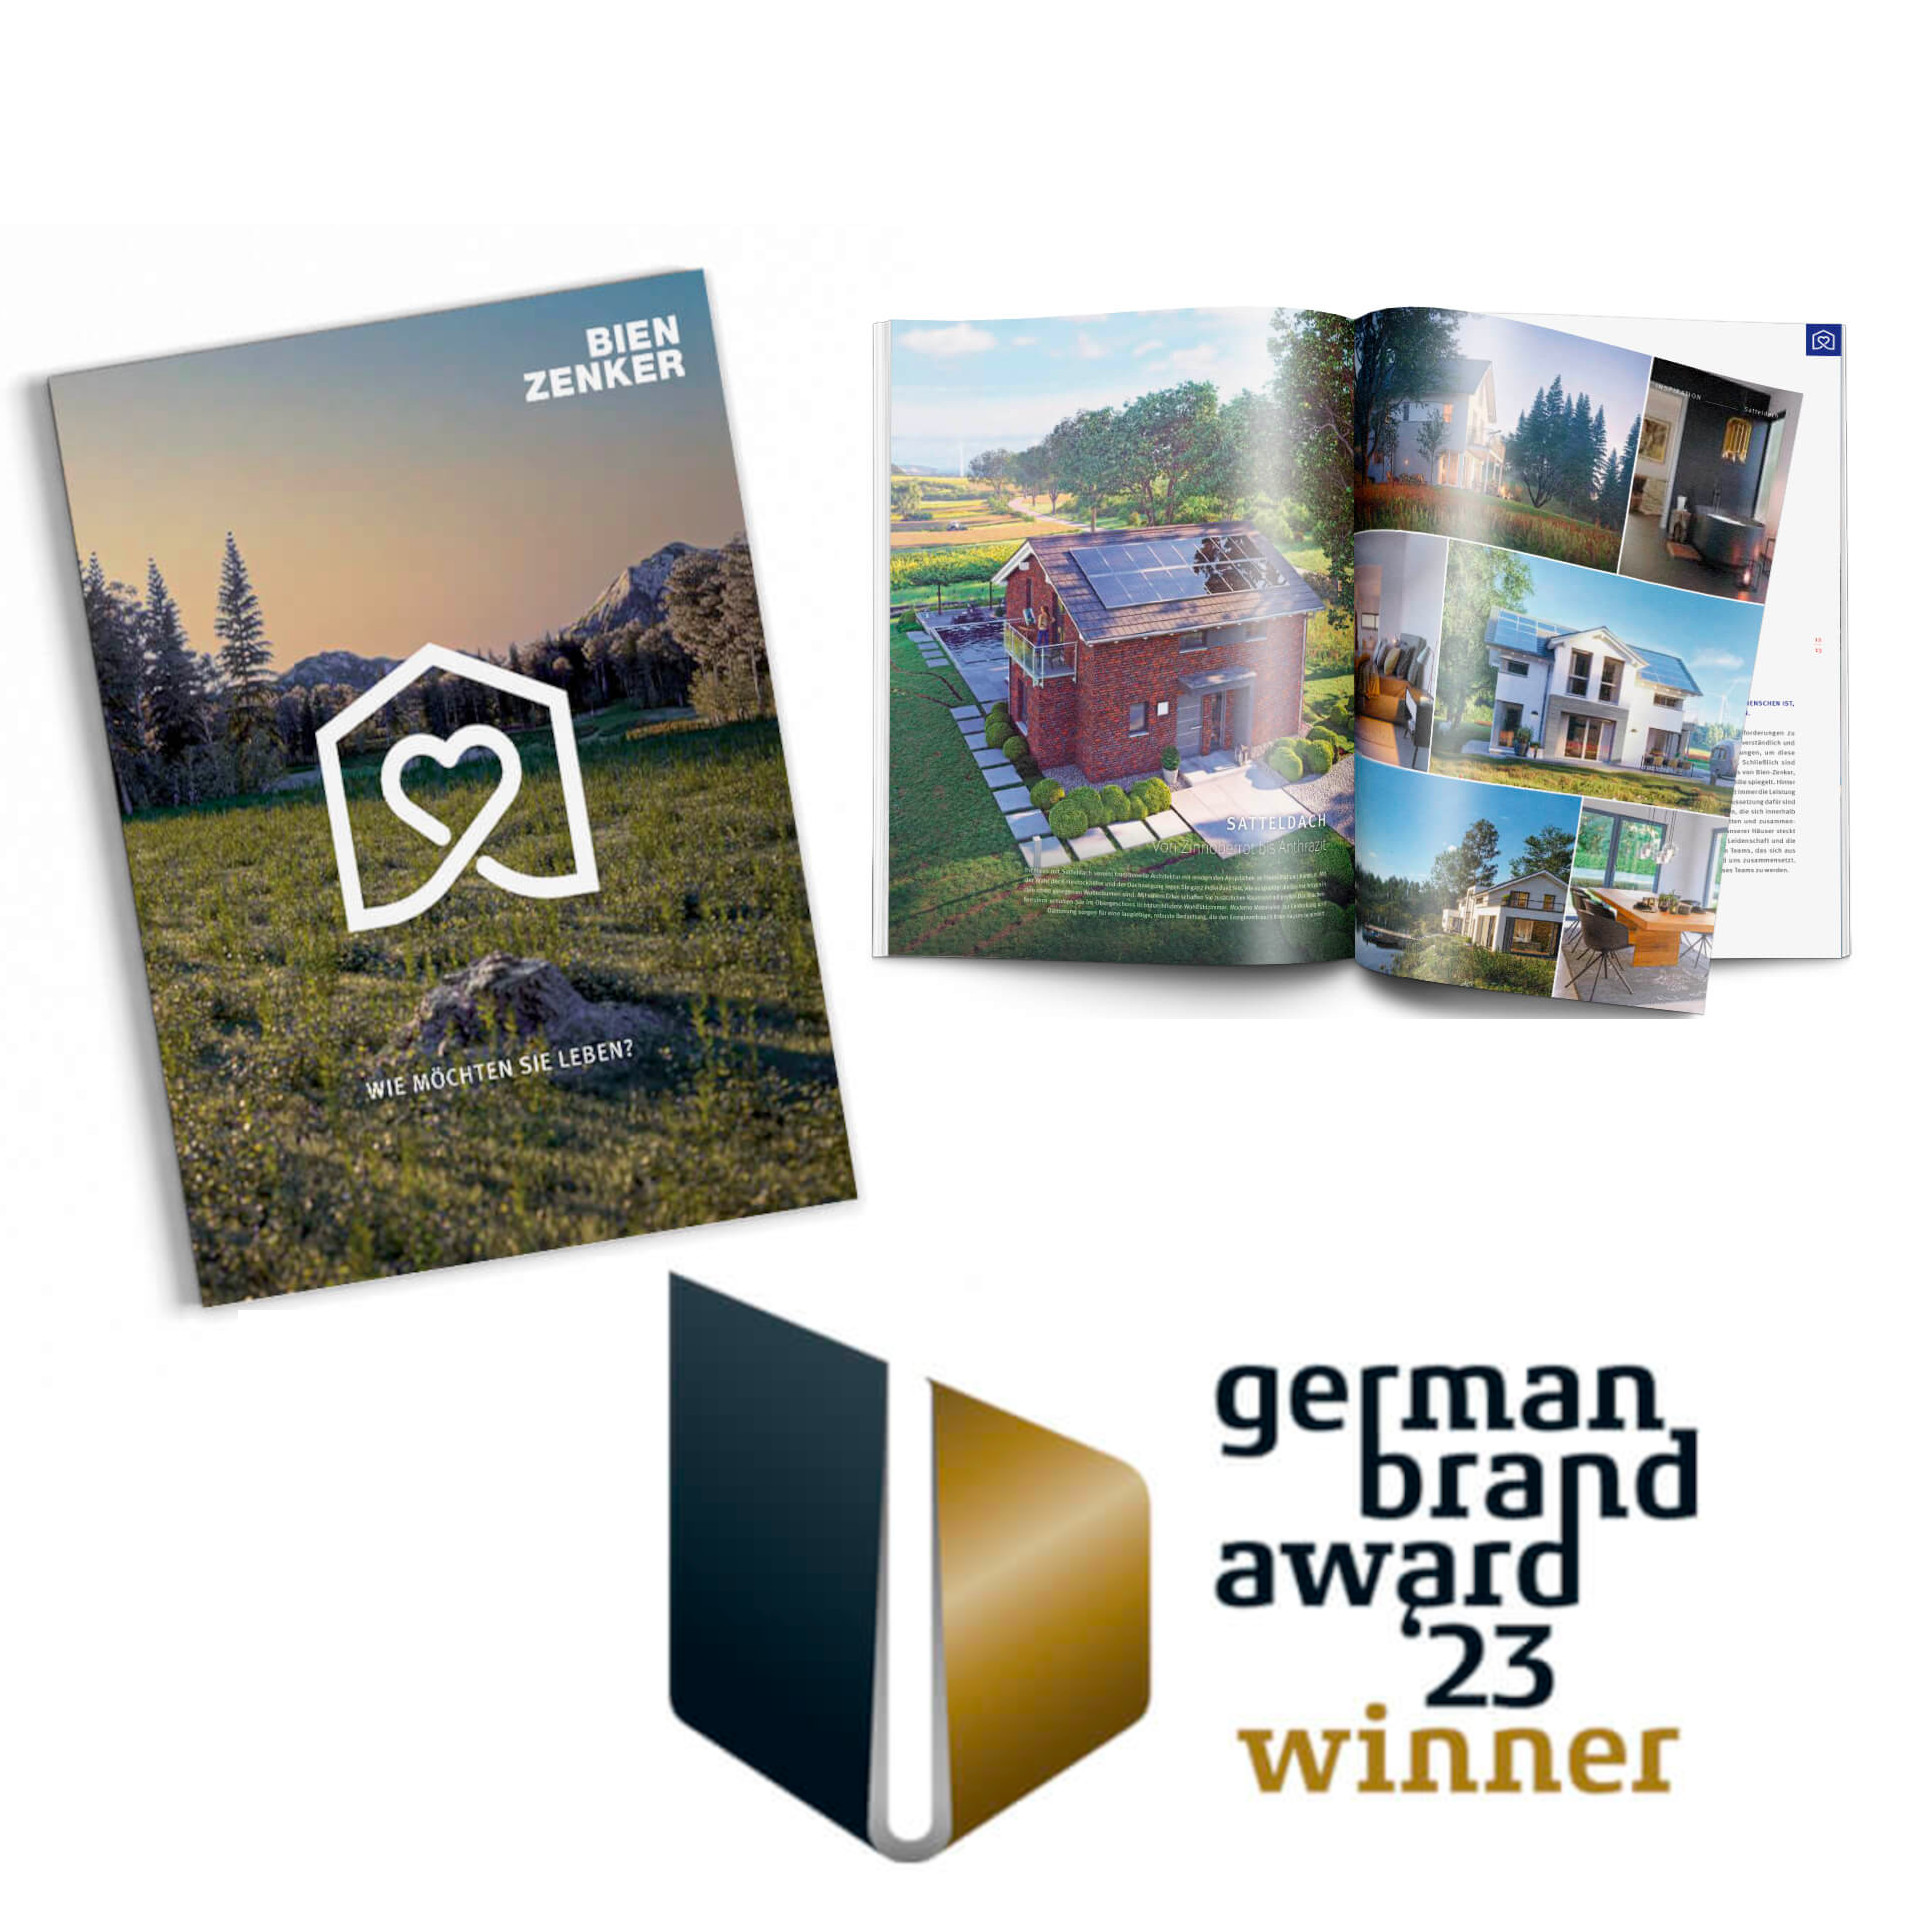 Bien-Zenker gewinnt German Brand Award 2023 mit neuer Imagebroschüre